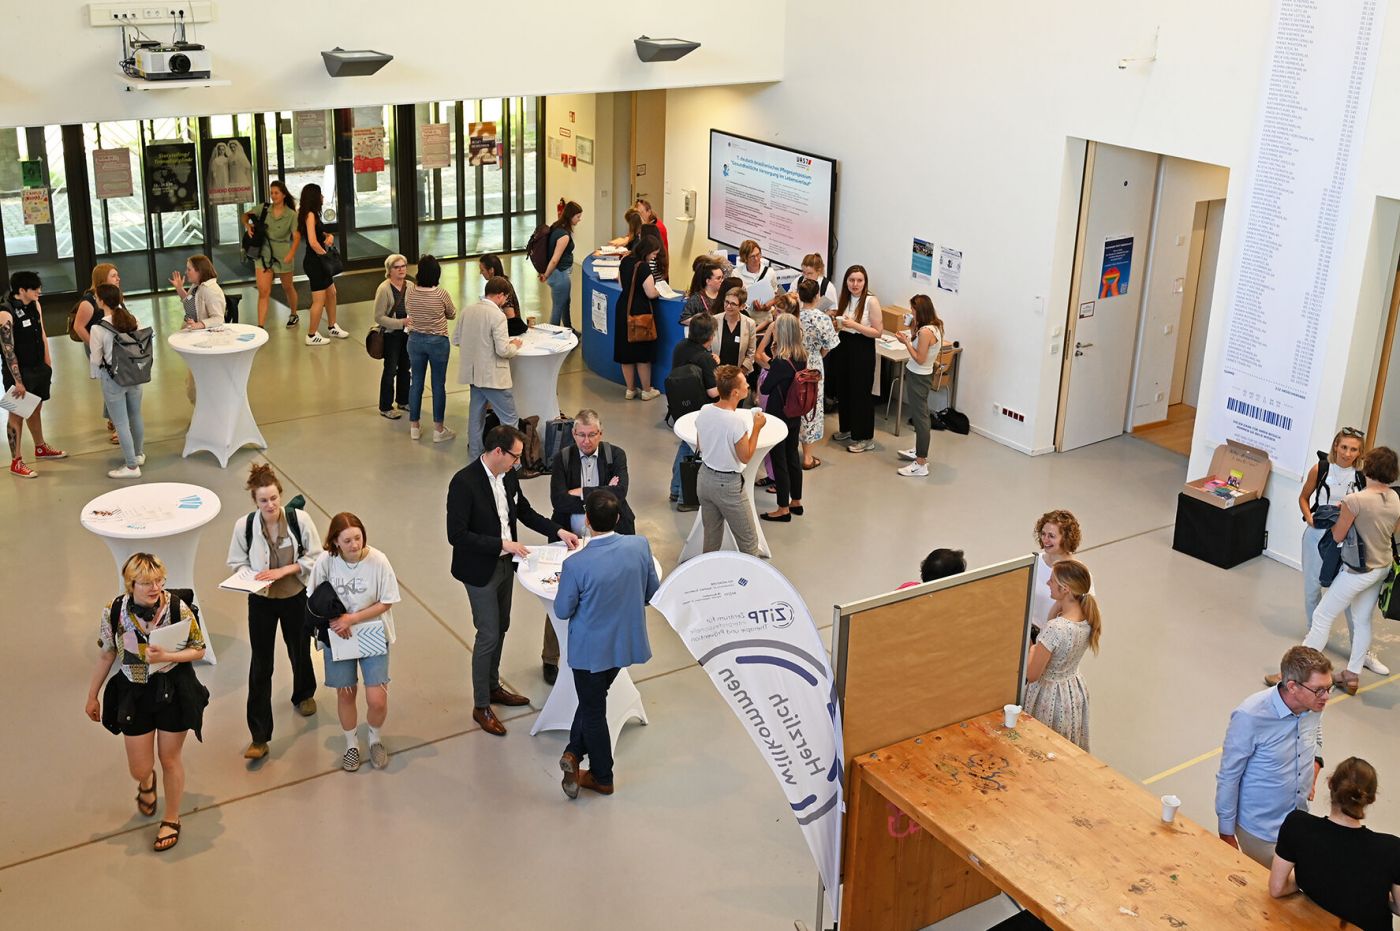 Symposiumsbesucher*innen stehen in Foyer in Grüppchen zusammen (Foto: Stefanie Gosejohann)